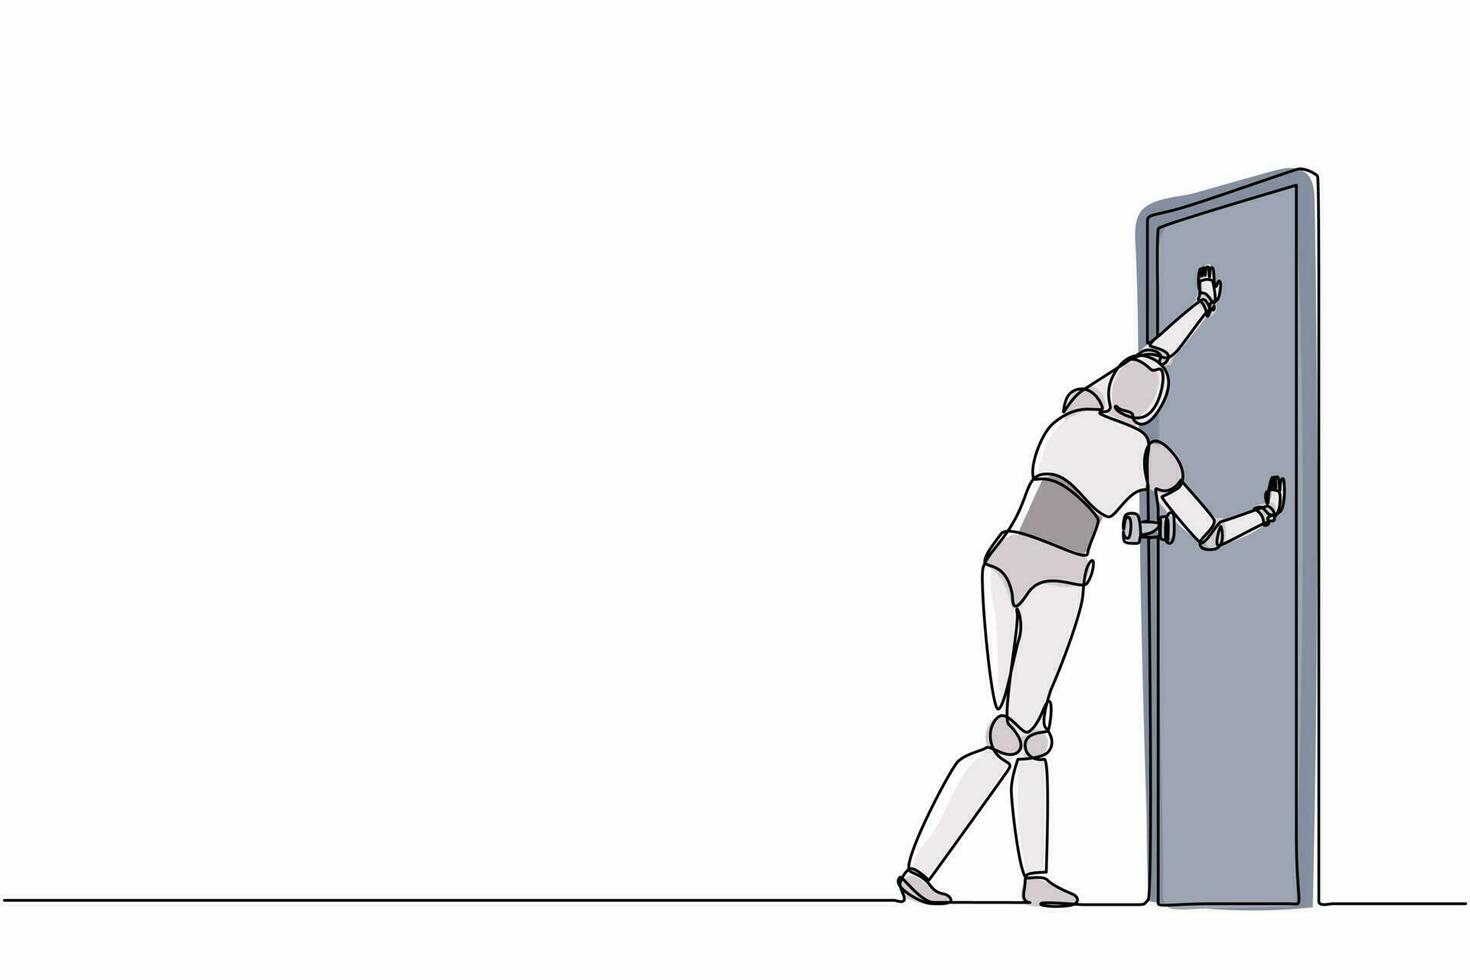 único robô de desenho de linha em pé e empurrando a porta fechada. desenvolvimento tecnológico futuro. inteligência artificial e processo de aprendizado de máquina. ilustração em vetor gráfico de design de linha contínua